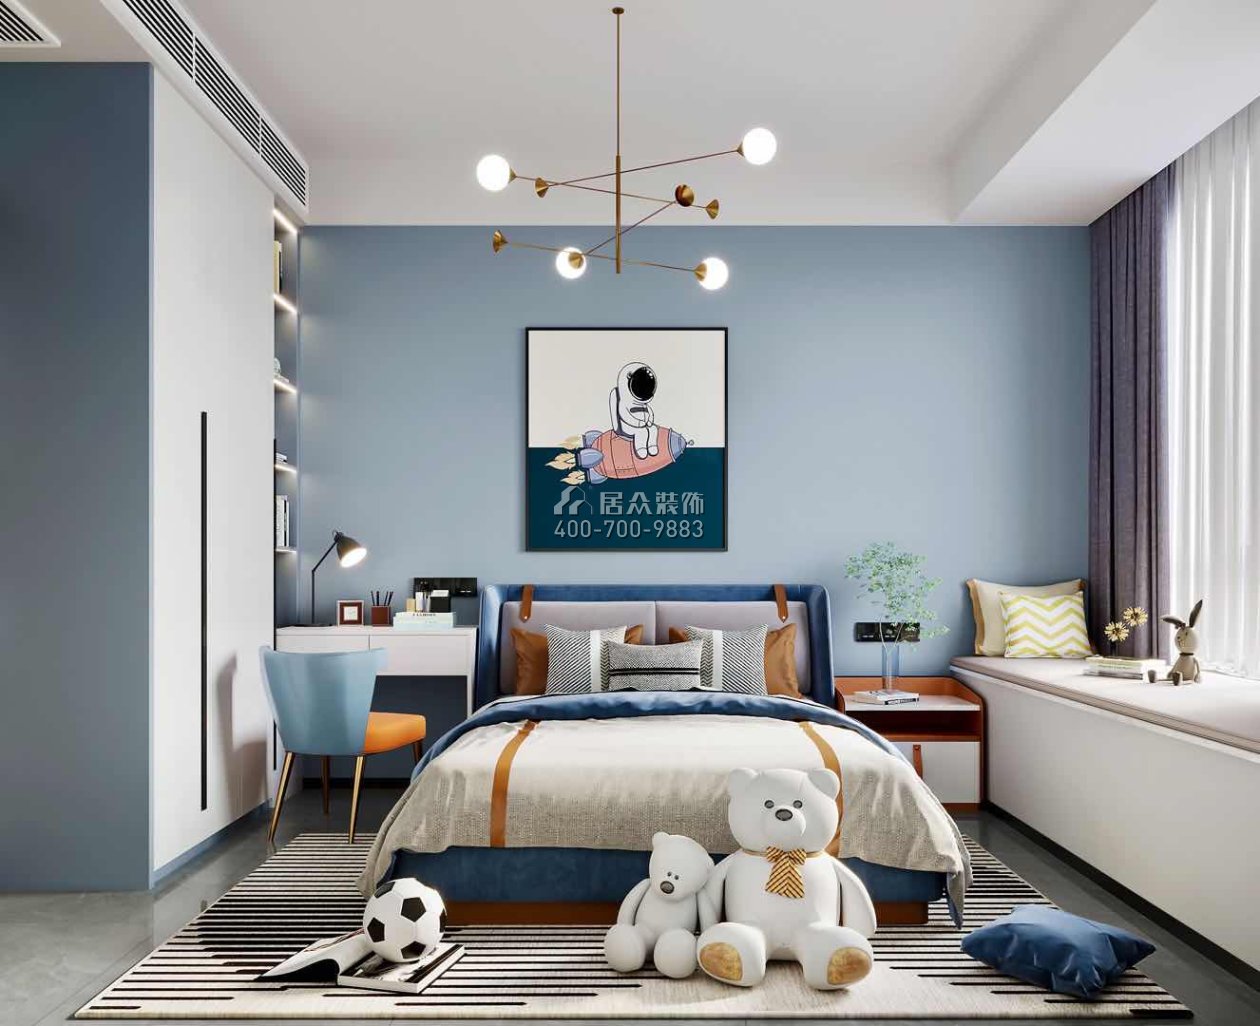 翠湖香山150平方米現代簡約風格平層戶型臥室裝修效果圖